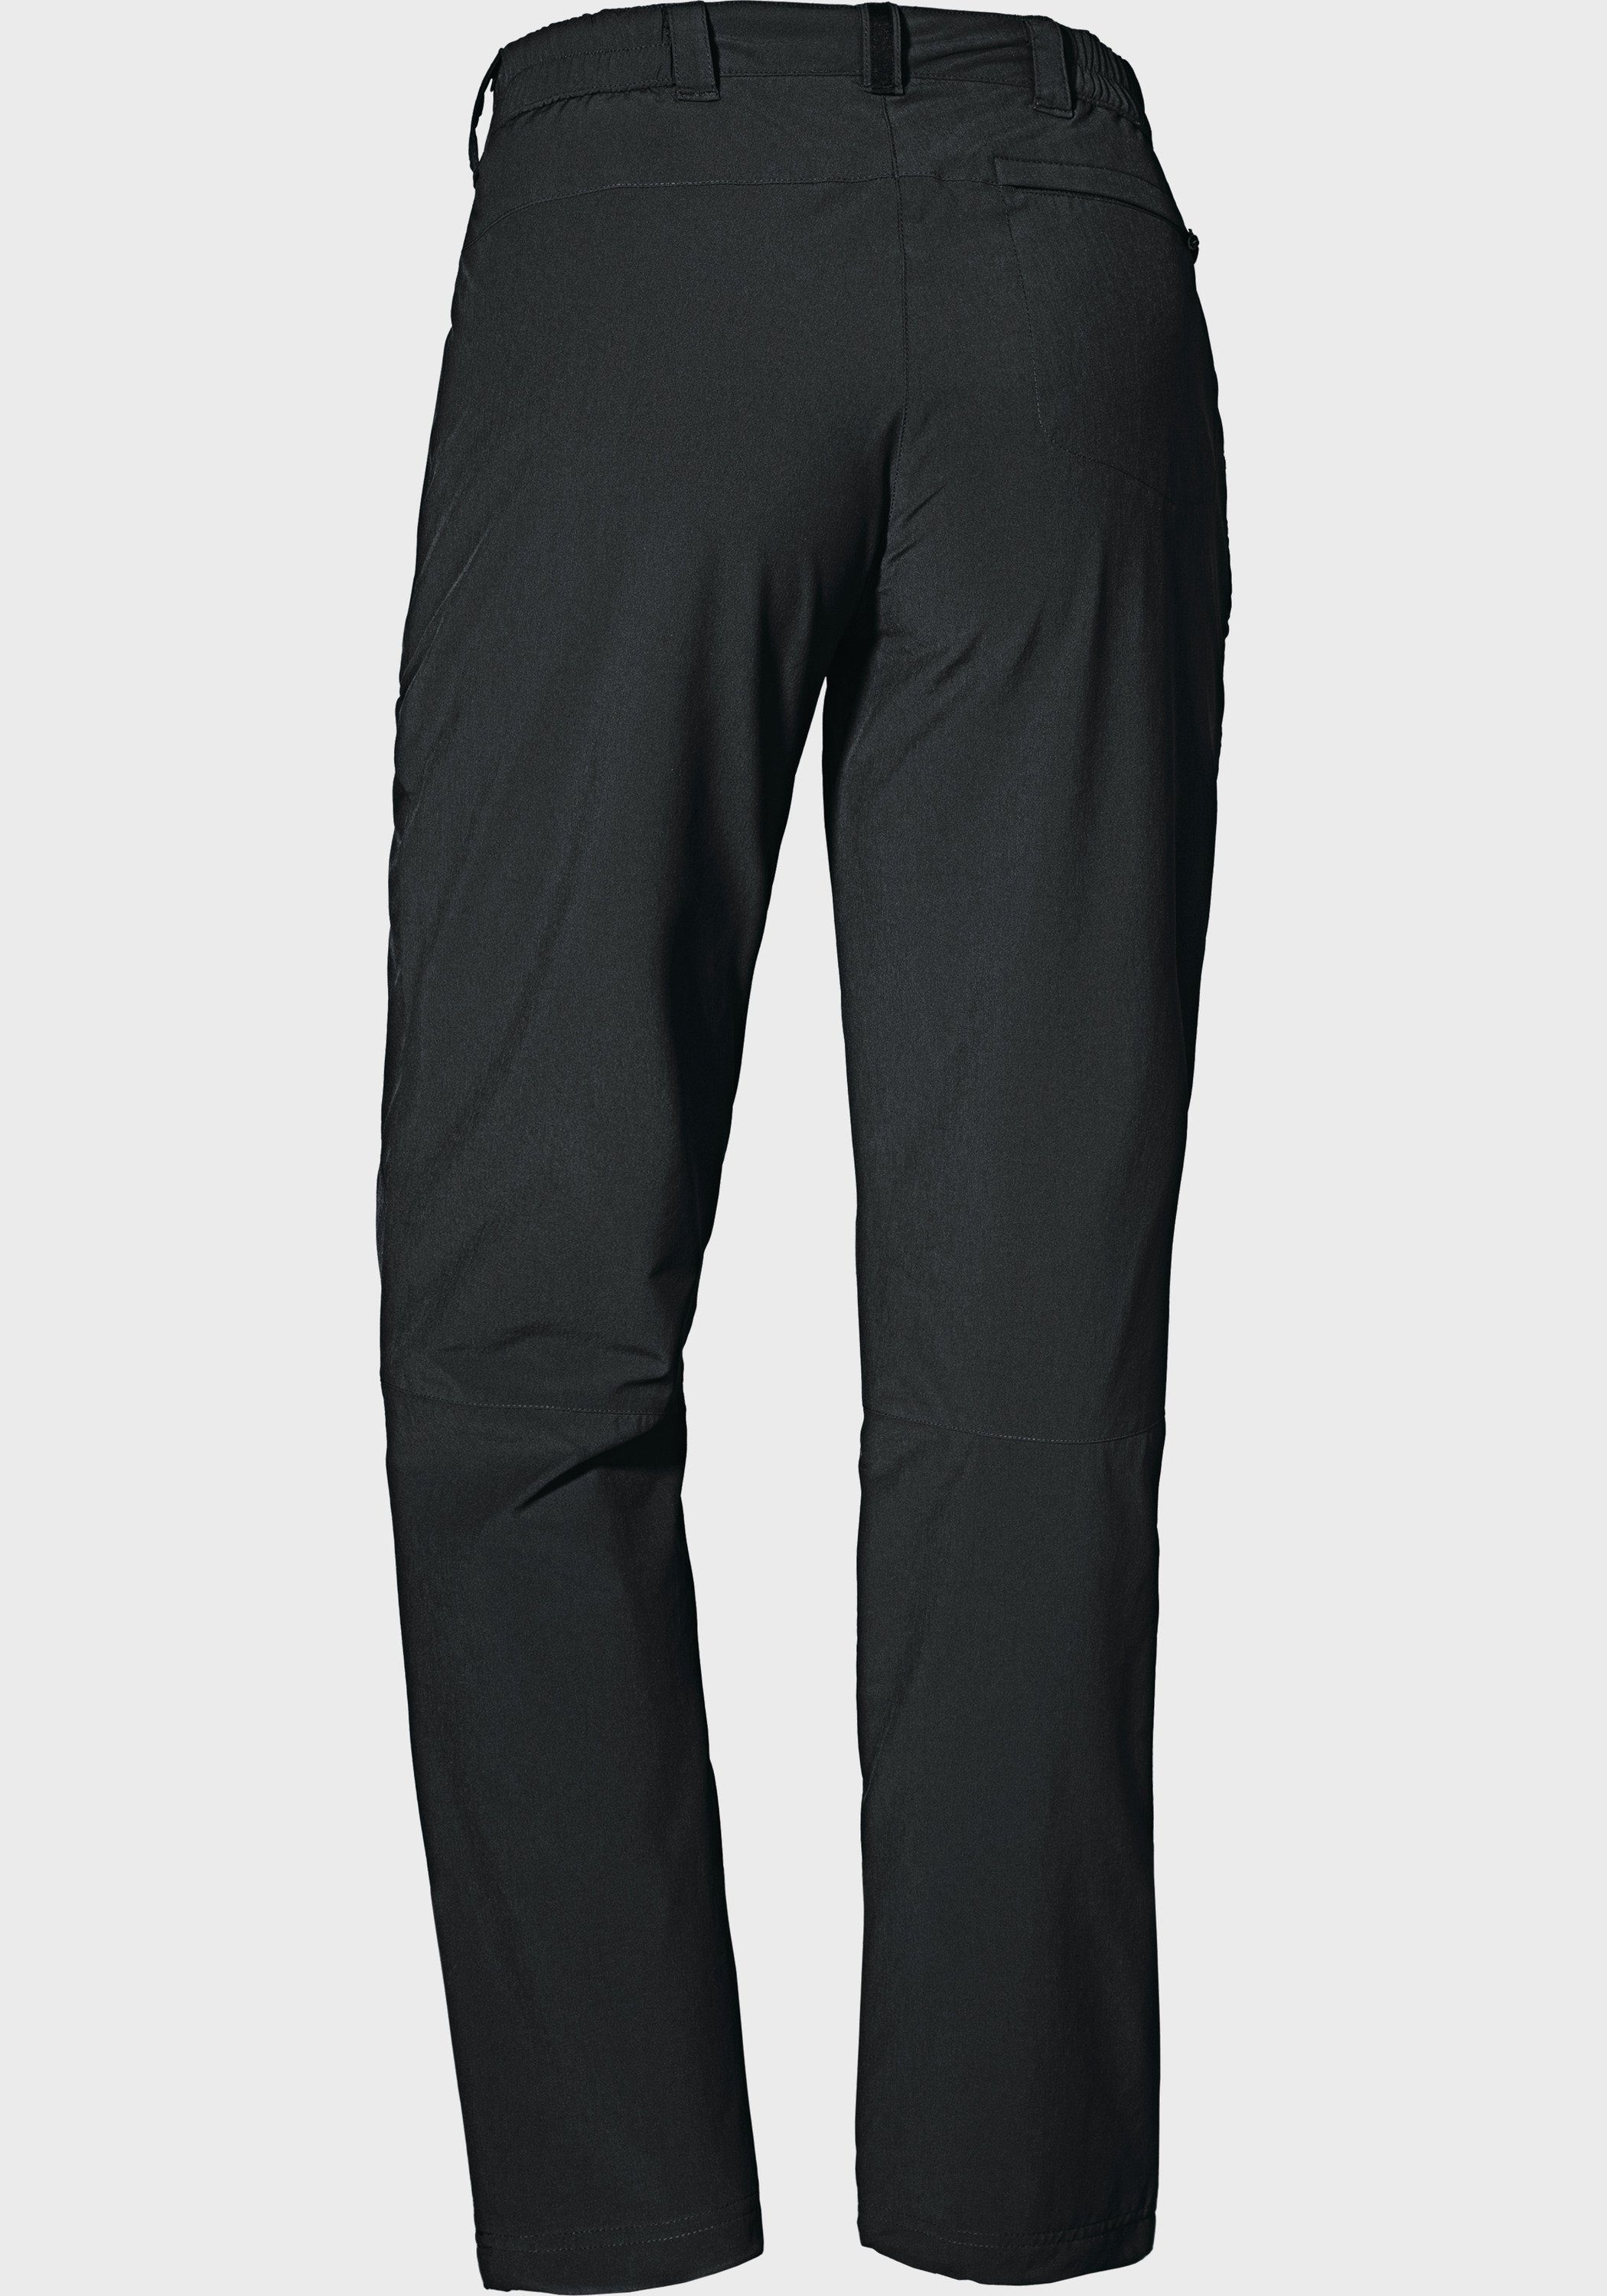 Pants L schwarz Engadin1 Schöffel Warm Outdoorhose